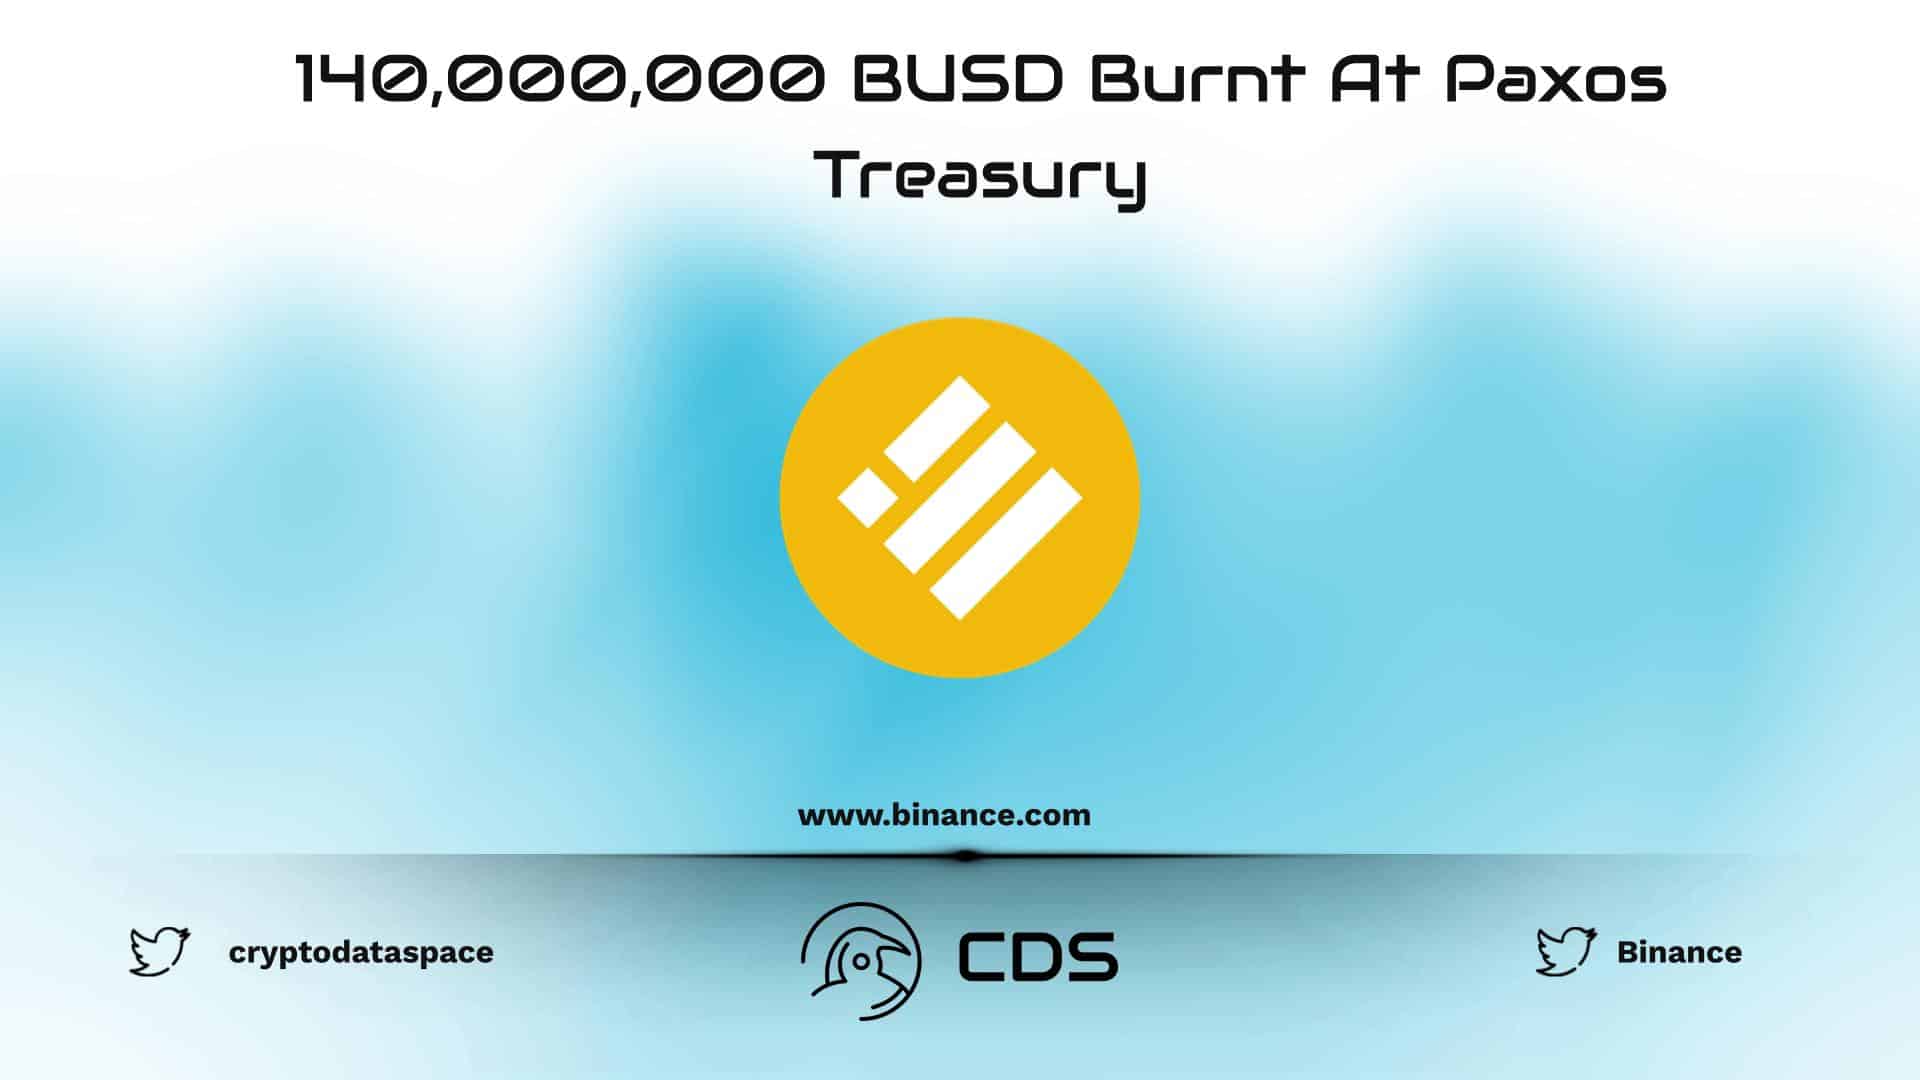 140,000,000 BUSD Burnt At Paxos Treasury